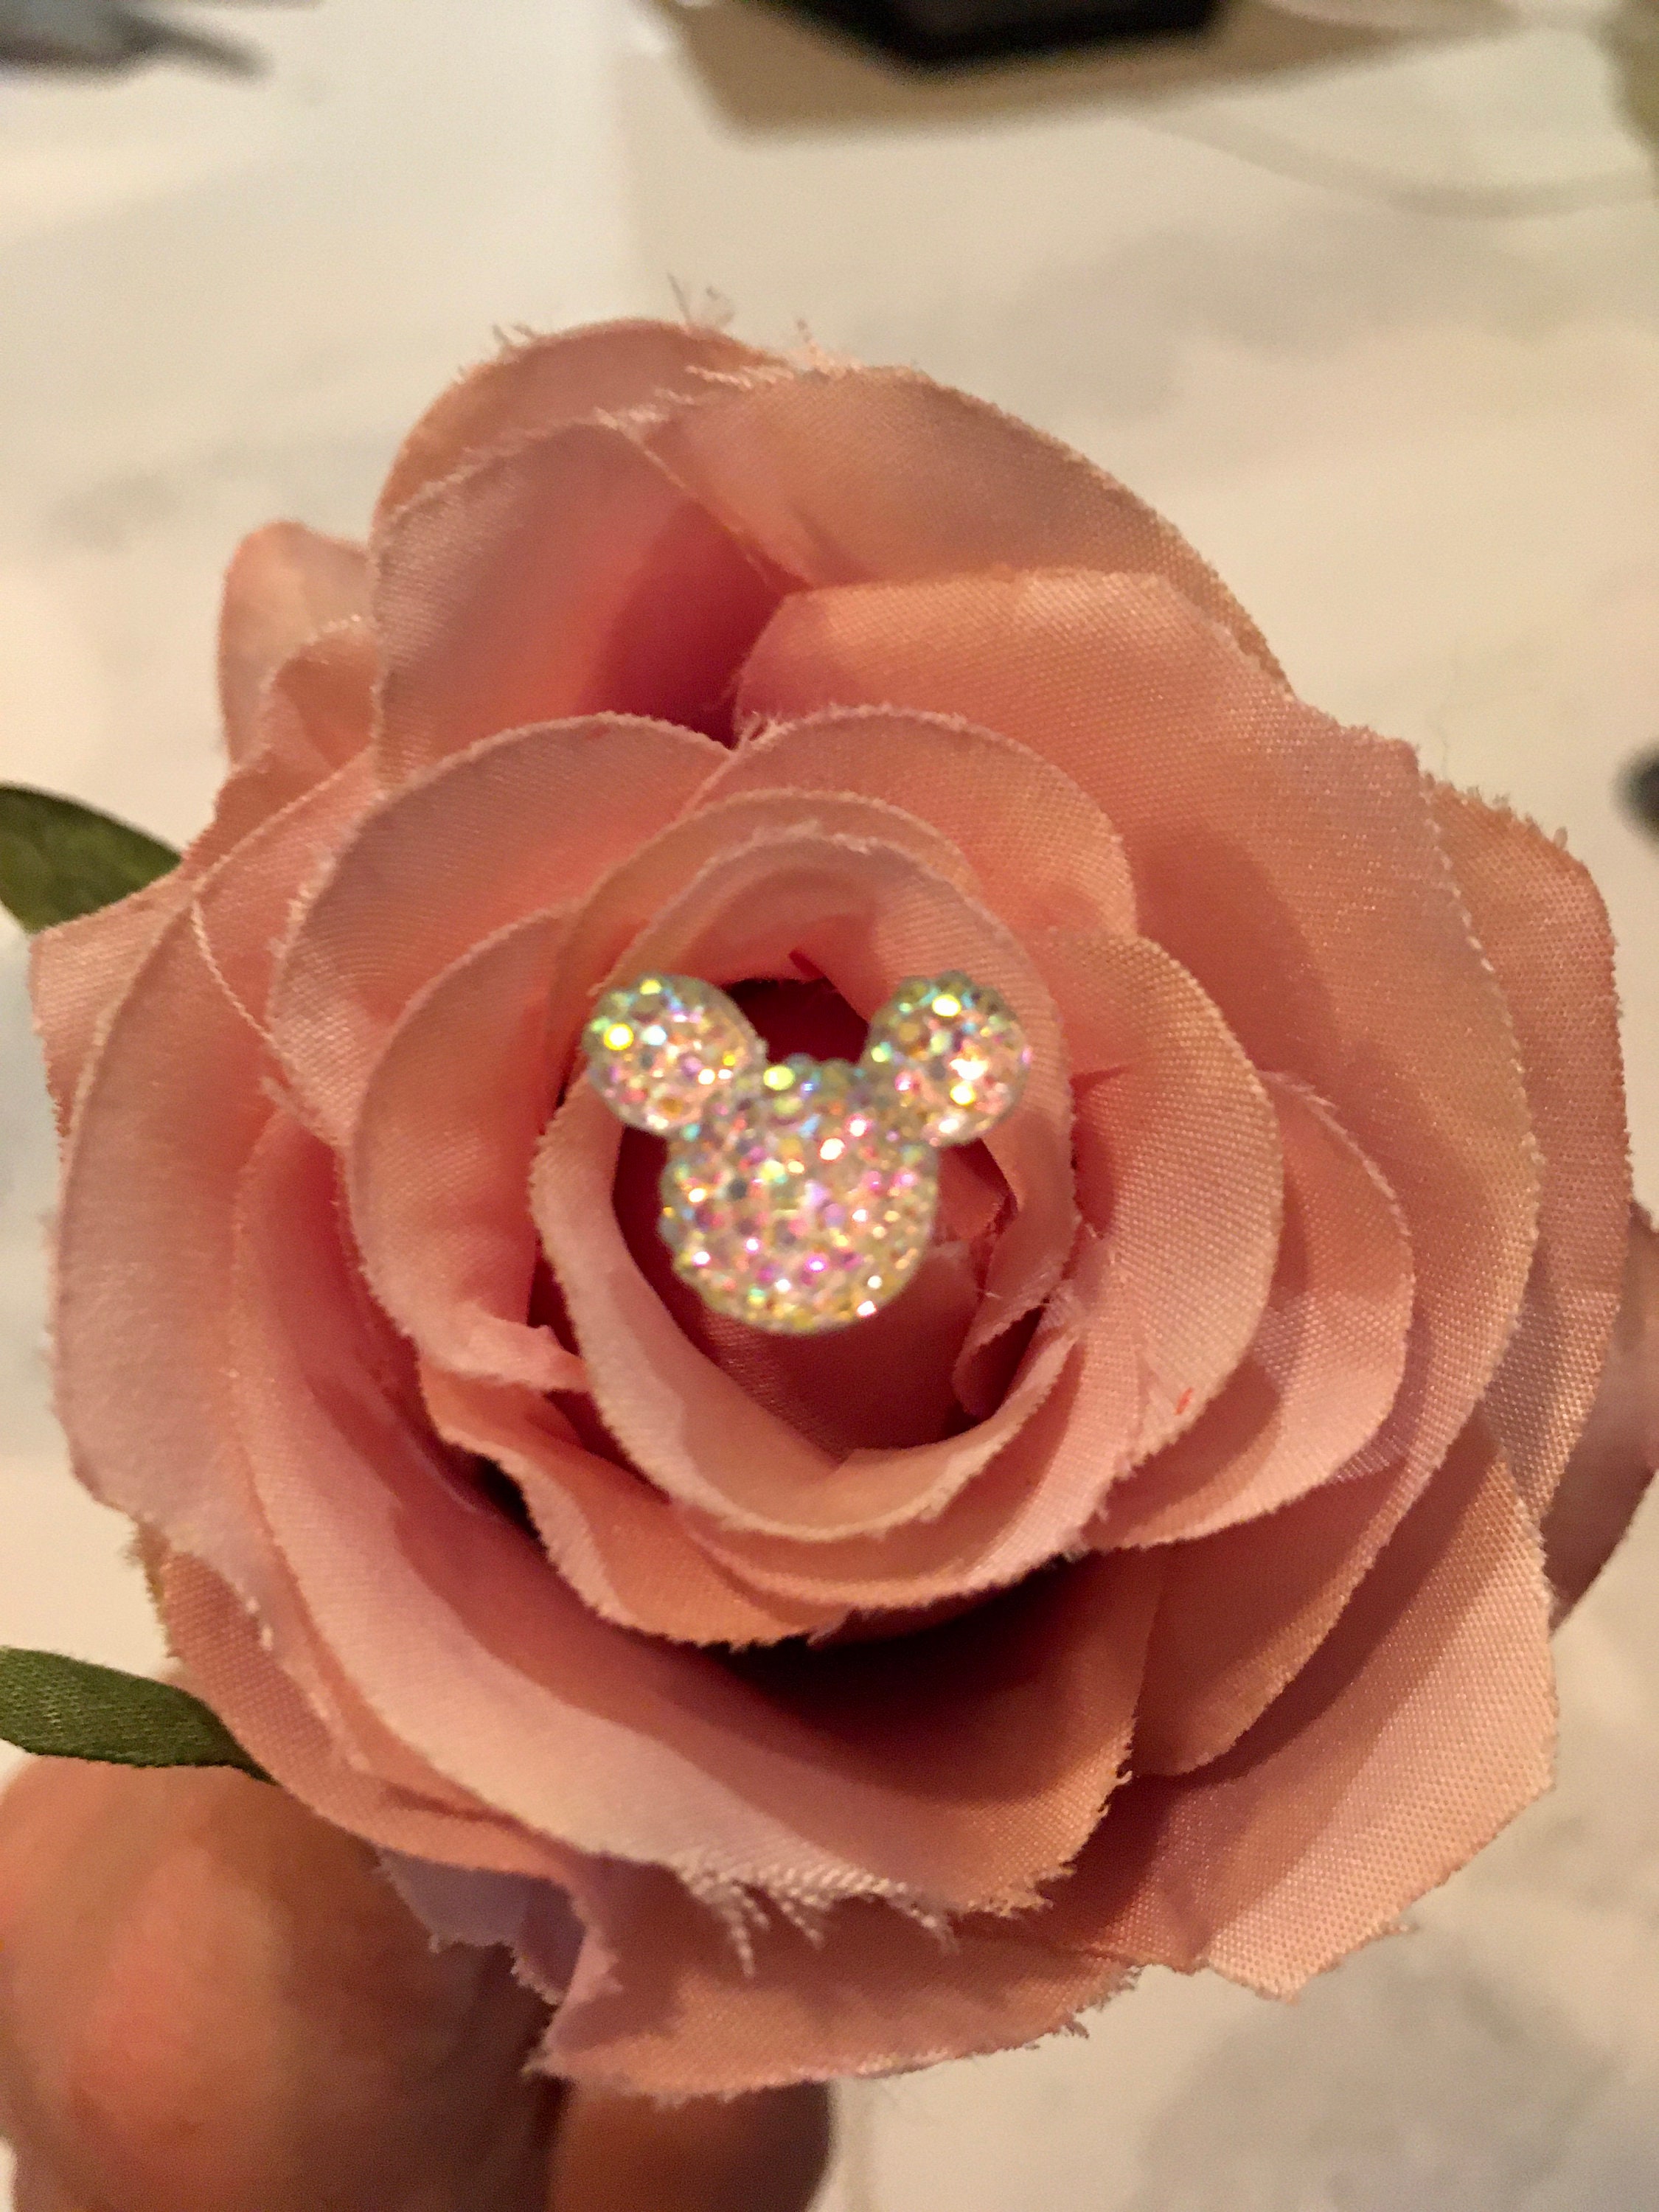 Disney Wedding Flower Pins, 6 Hidden Mickey Mouse Ears Bouquet